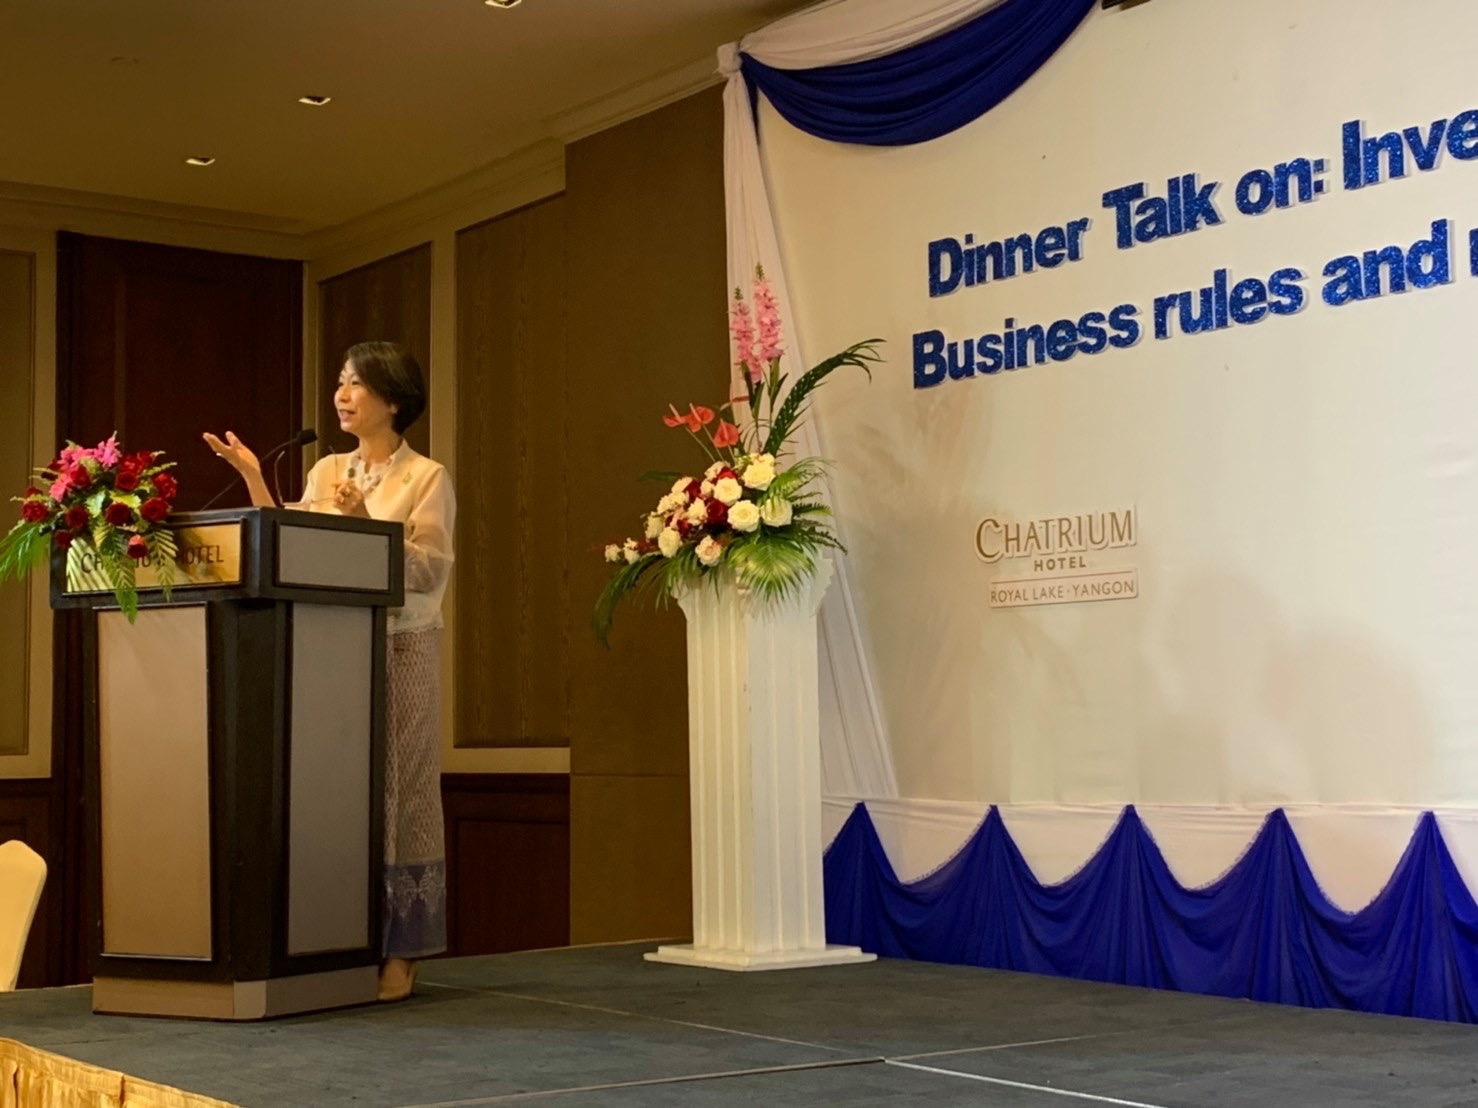 เอกอัครราชทูต ณ กรุงย่างกุ้ง ร่วมงาน Dinner Talk “Investment Opportunities in Myanmar & Business Rules and Regulations for Investment in Myanmar”  จัดโดยสำนักงานคณะกรรมการส่งเสริมการลงทุน